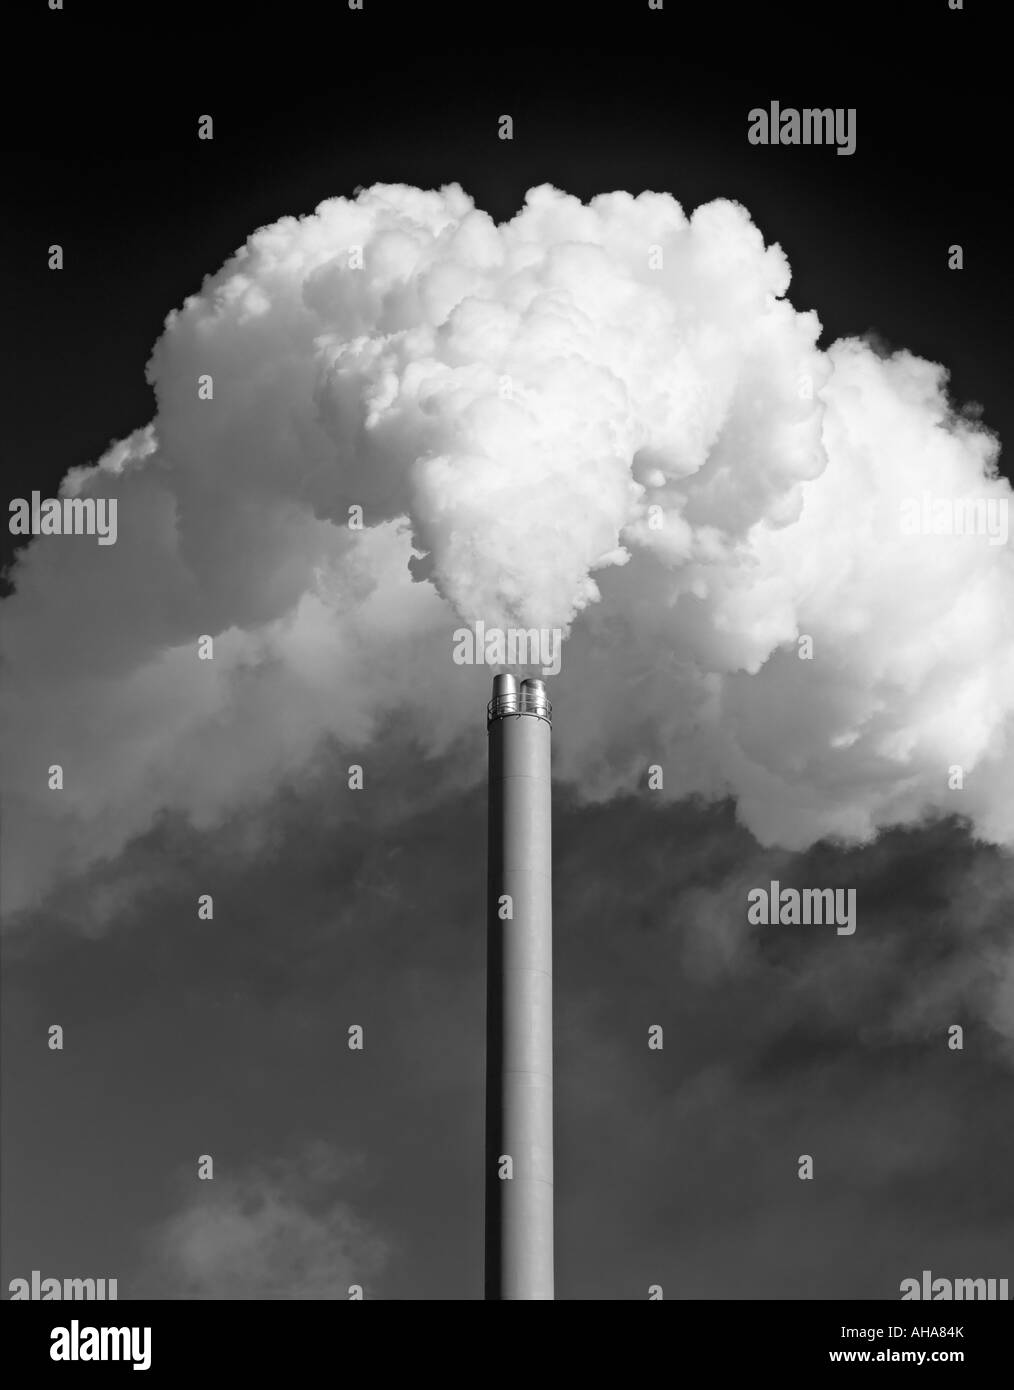 Regno Unito. Una fabbrica di camino di emissione di un enorme pennacchio di fumo bianco contro un cielo scuro, monocromatico Foto Stock